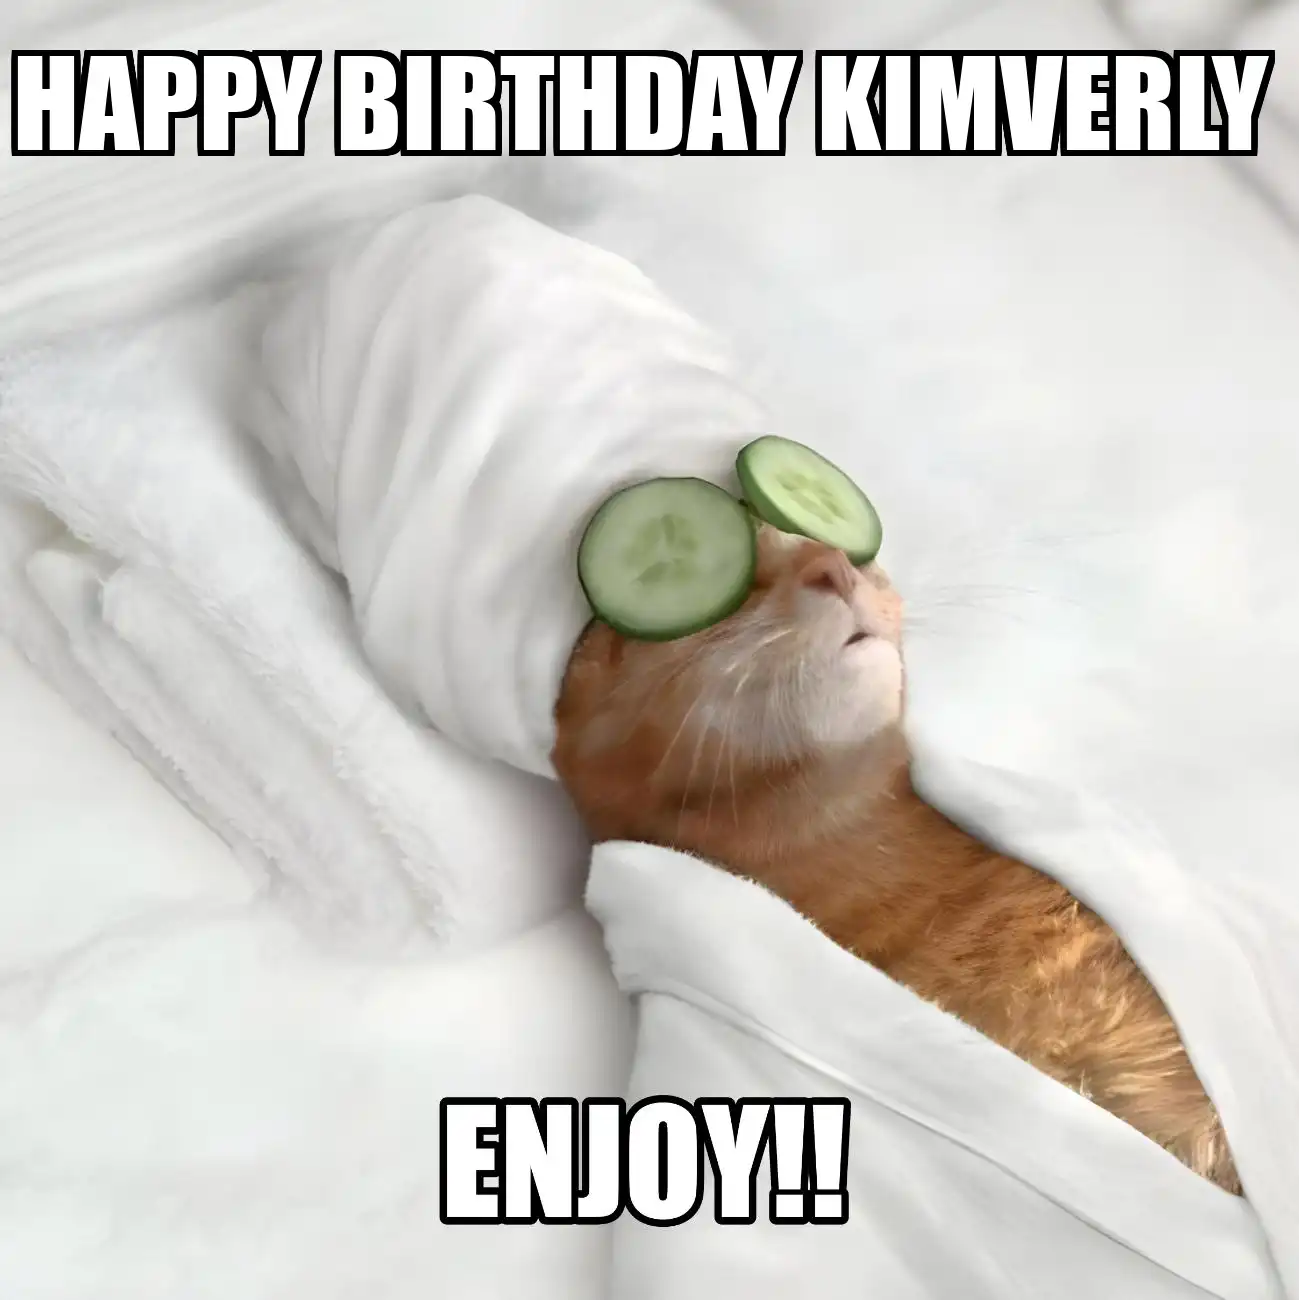 Happy Birthday Kimverly Enjoy Cat Meme